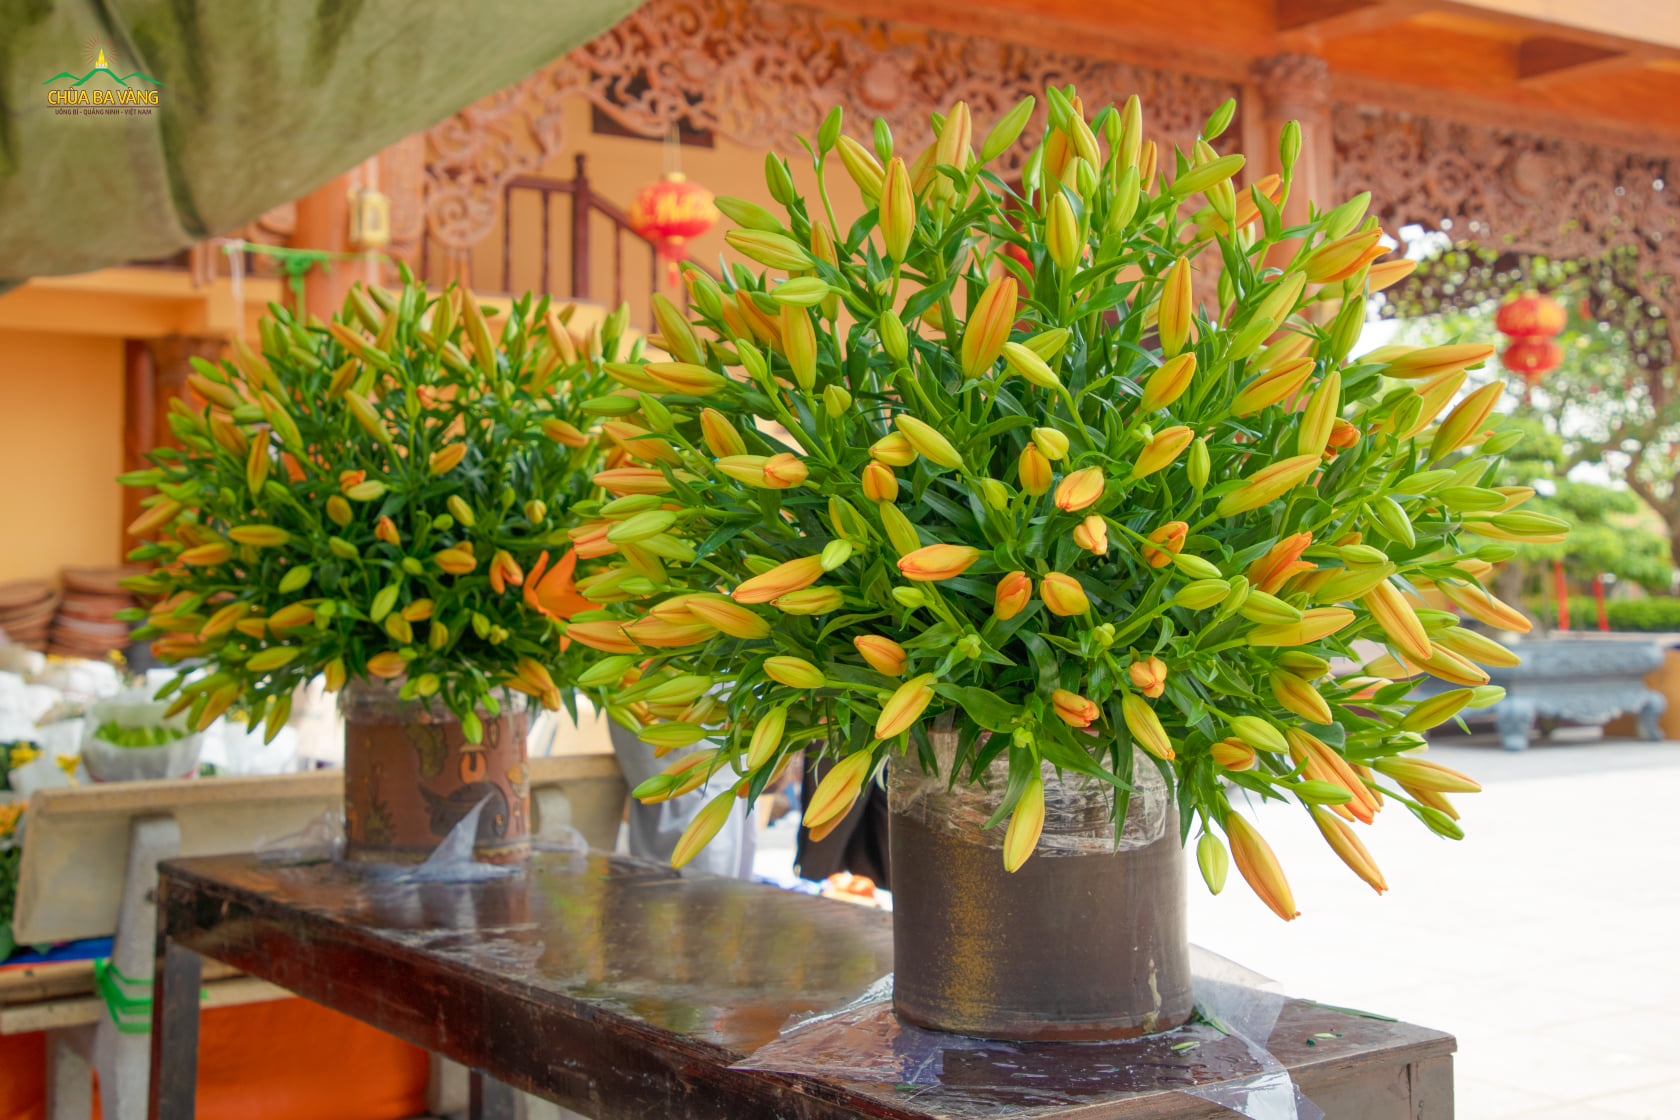 Chum hoa loa ly lớn sẽ được đưa đến khu vực trang trí trong chùa